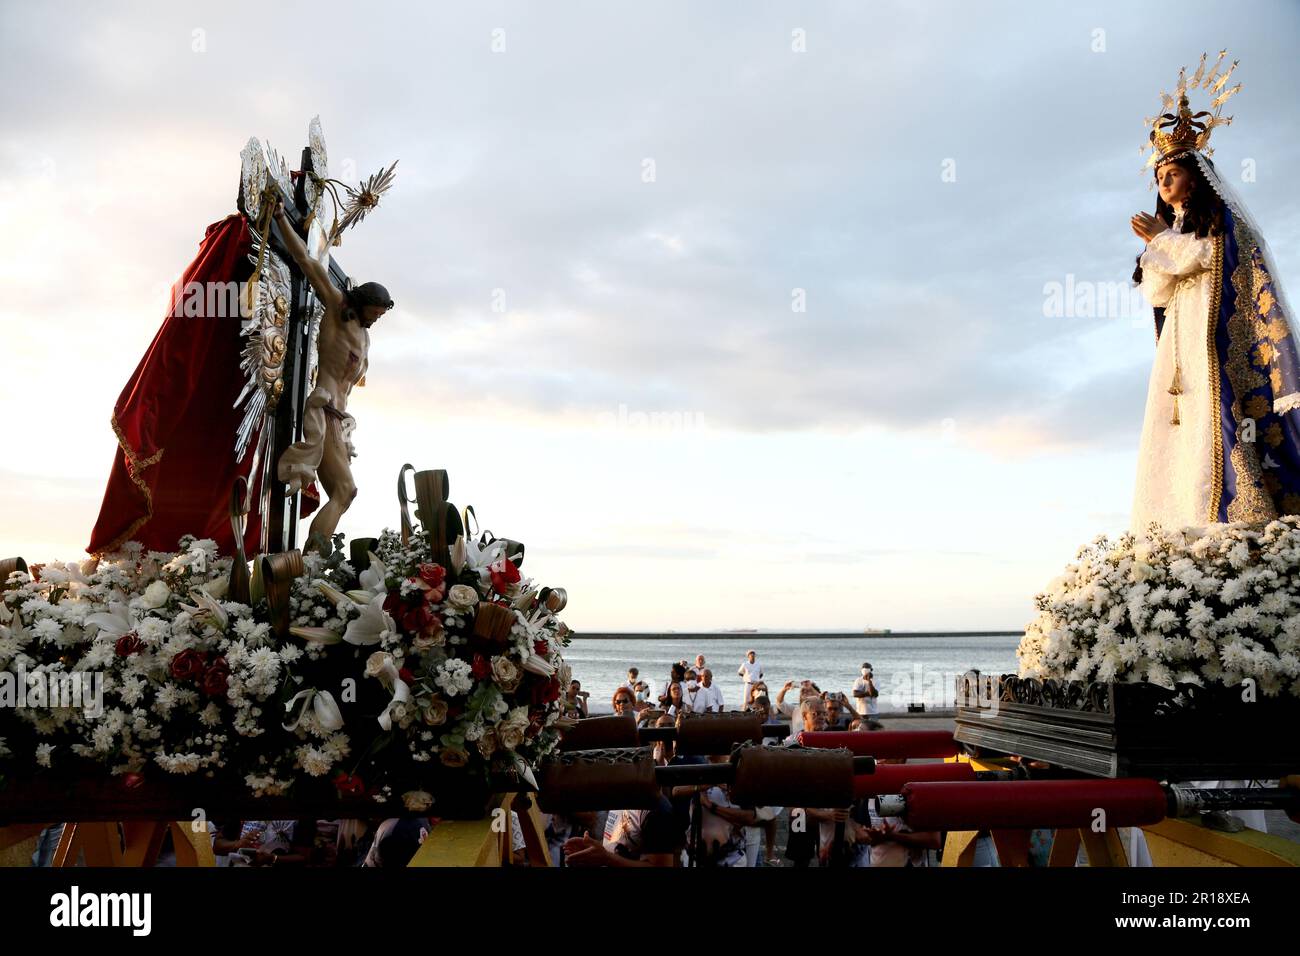 salvador, bahia, brasilien - 1. januar 20223: Seeprozession durch die Gewässer der Allerheiligen-Bucht zu Ehren von Bom Jesus dos Navegantes in Salvador Stockfoto